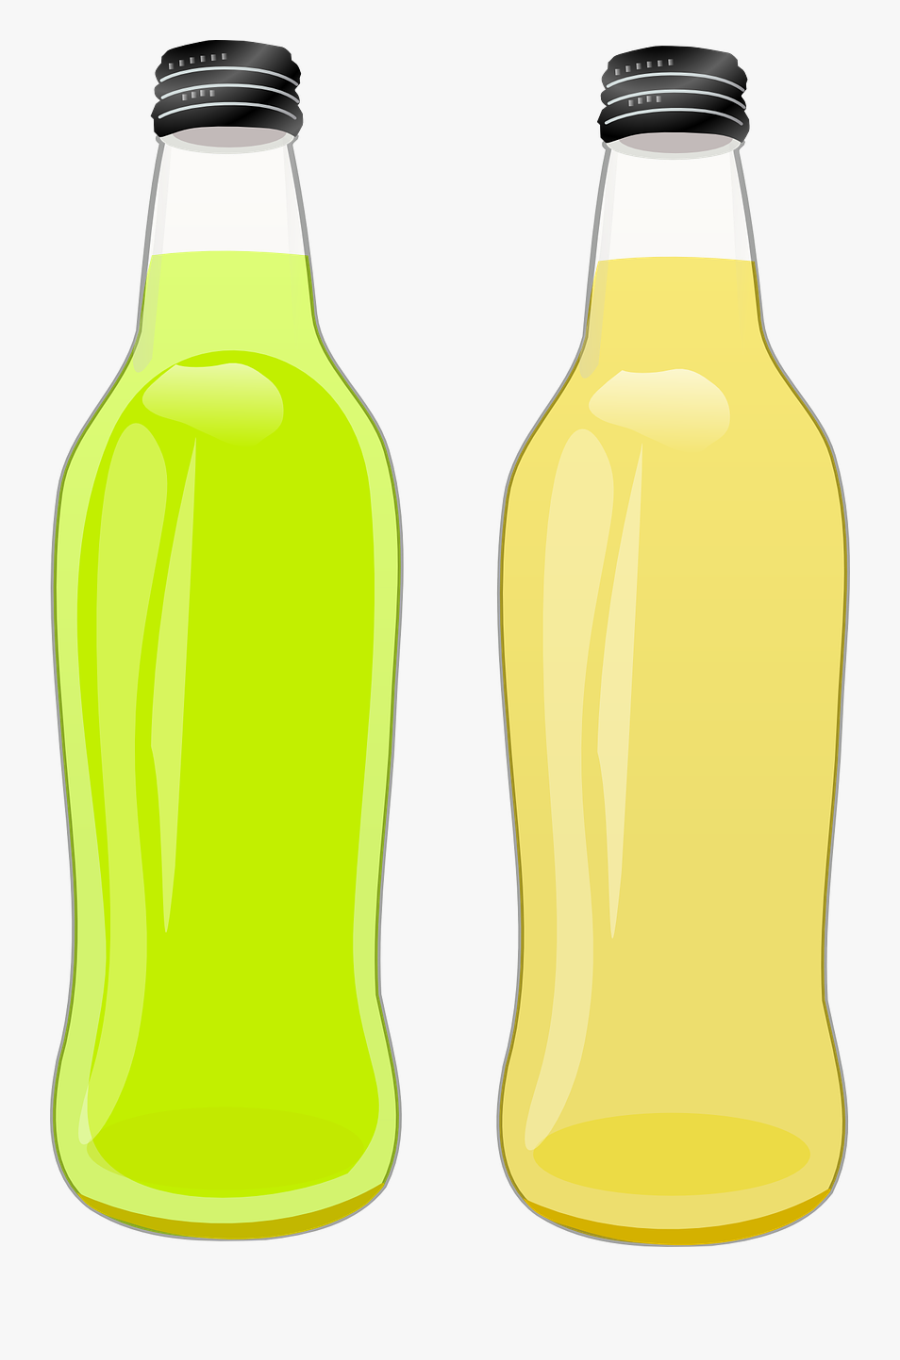 Bottle Drink Pop Free Picture - Botella De Limonada Png, Transparent Clipart